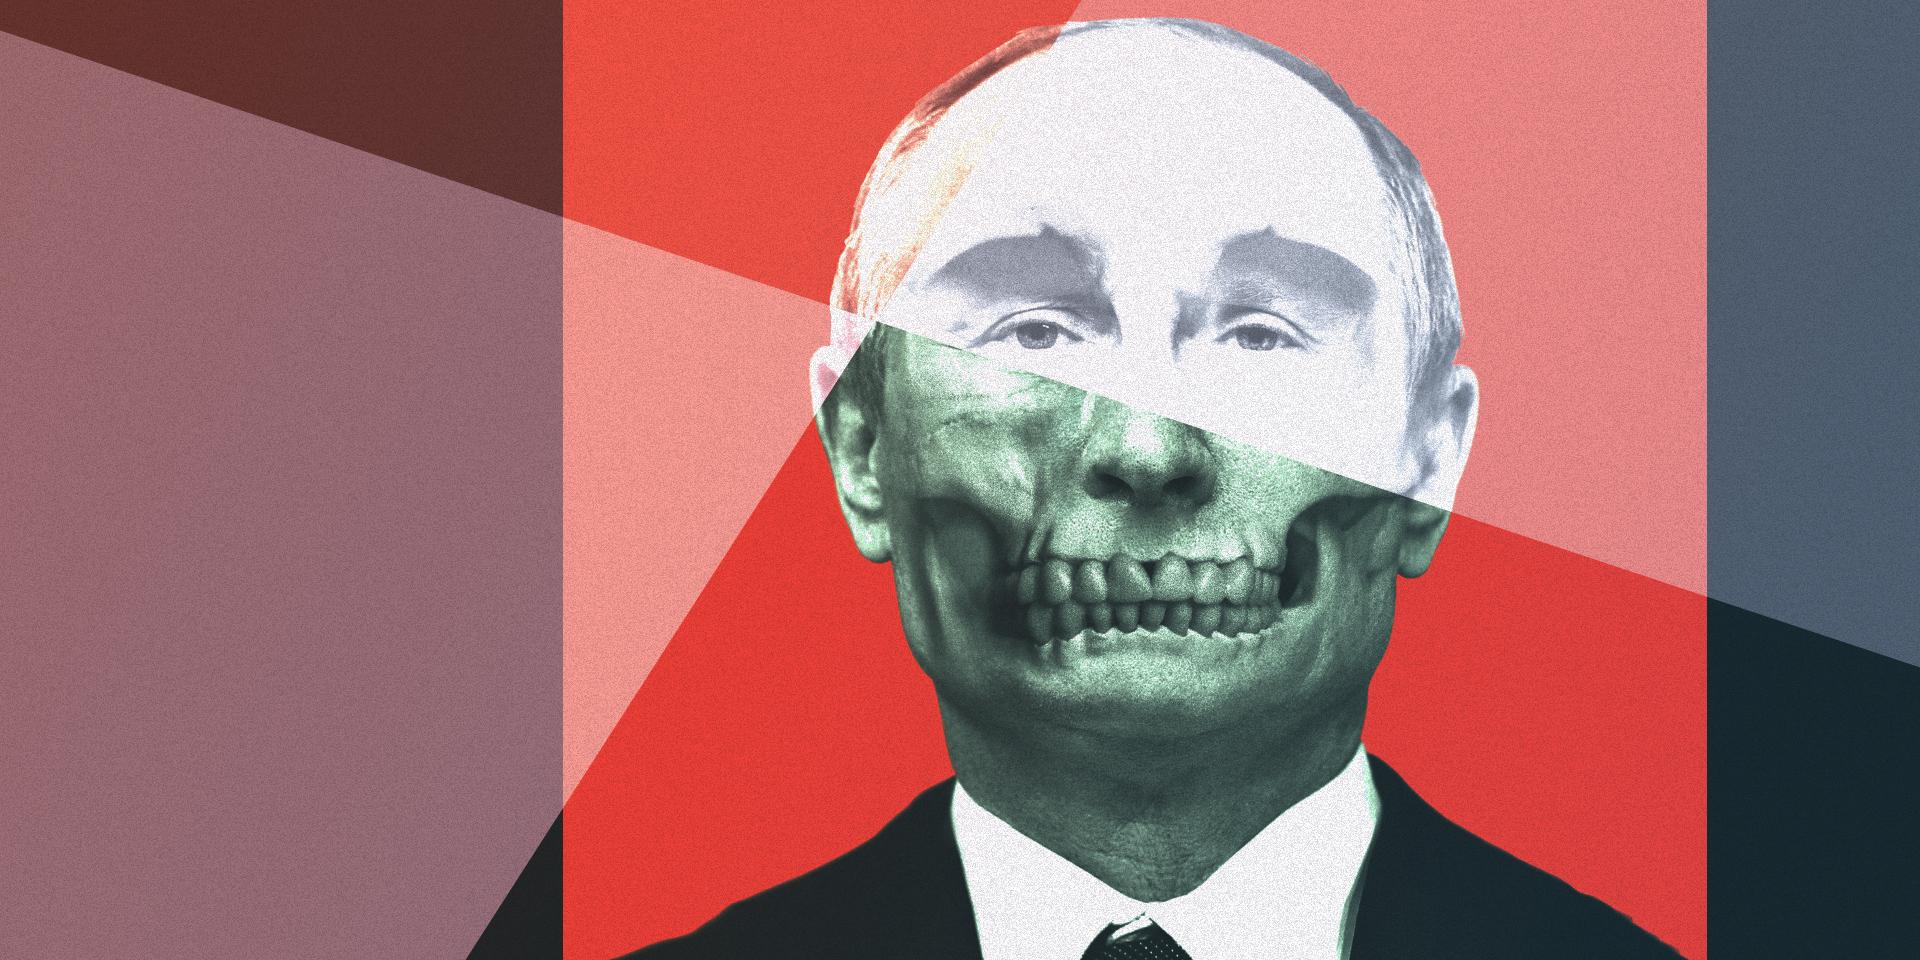 Что происходит в голове Путина?